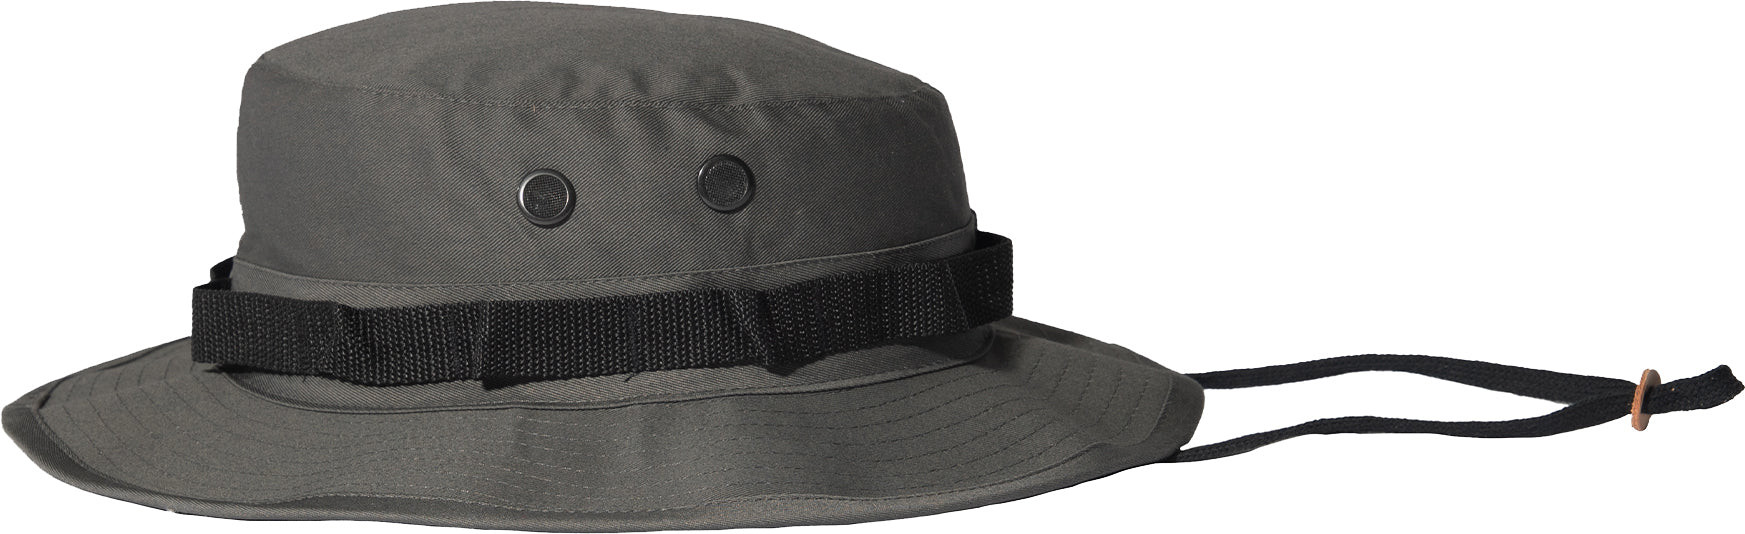 Charcoal Grey Boonie Hat - Galaxy Army Navy